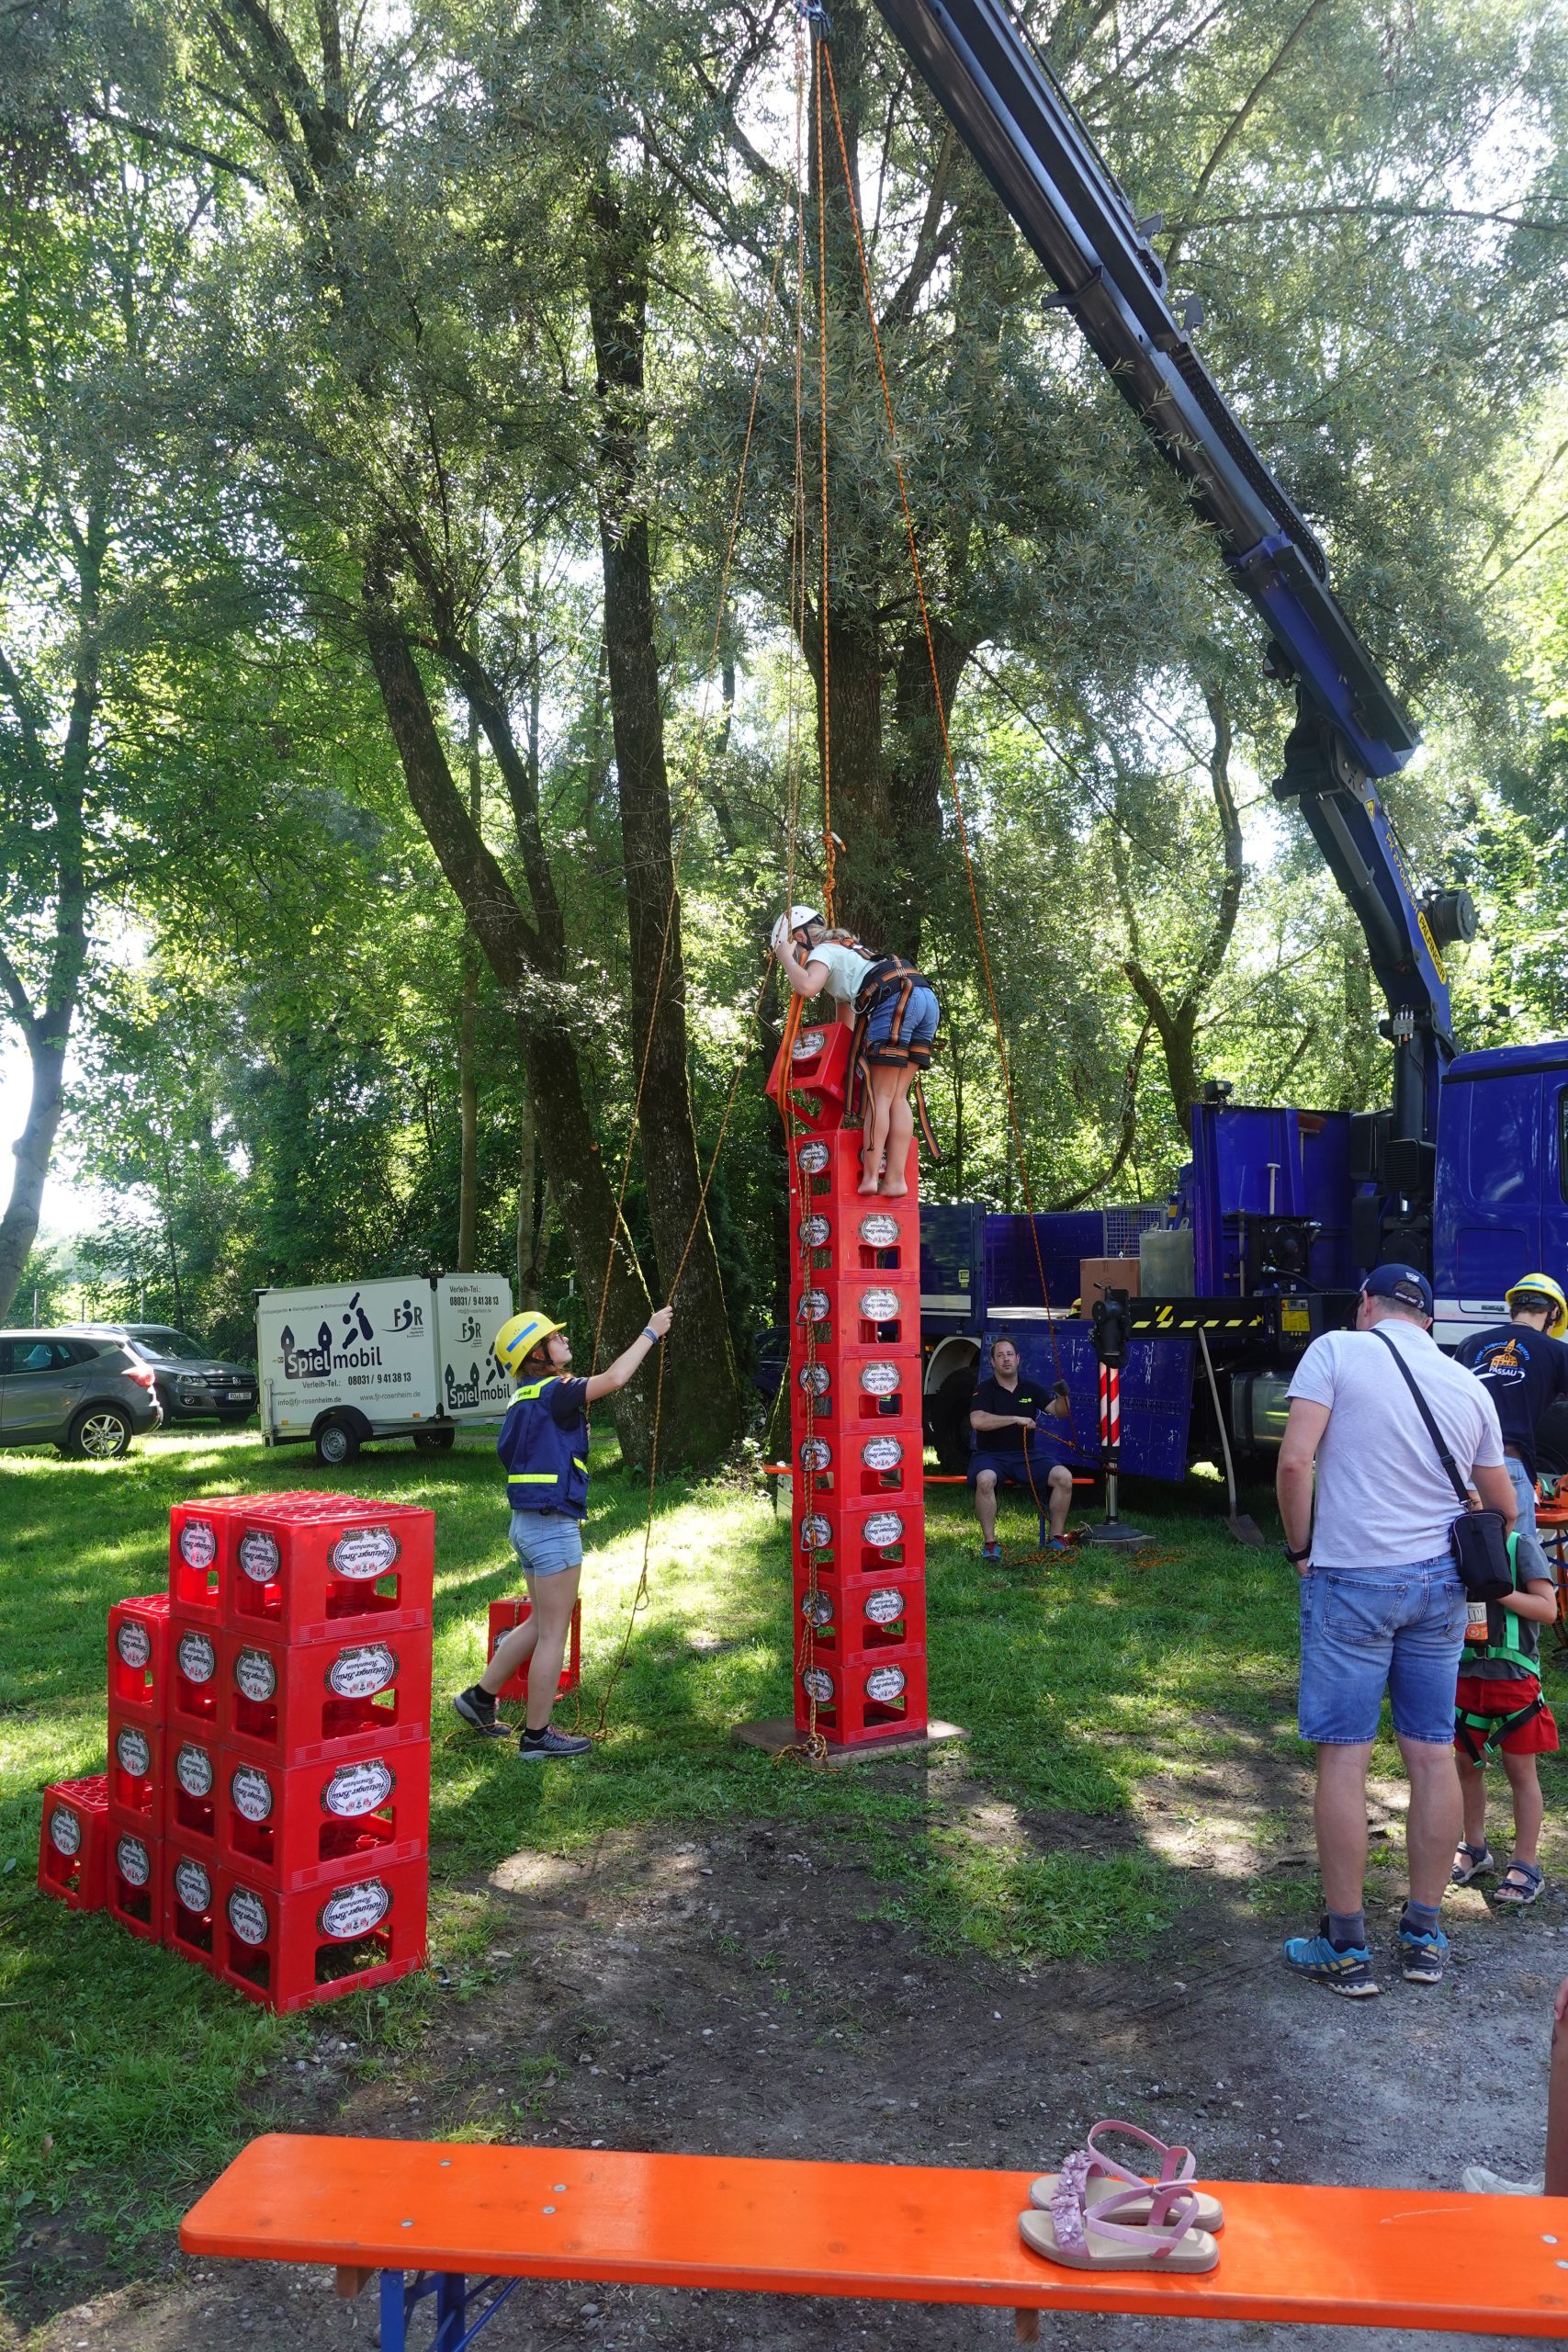 Biertragelklettern beim Inndammfest in Rosenheim. Foto: Innpuls.me